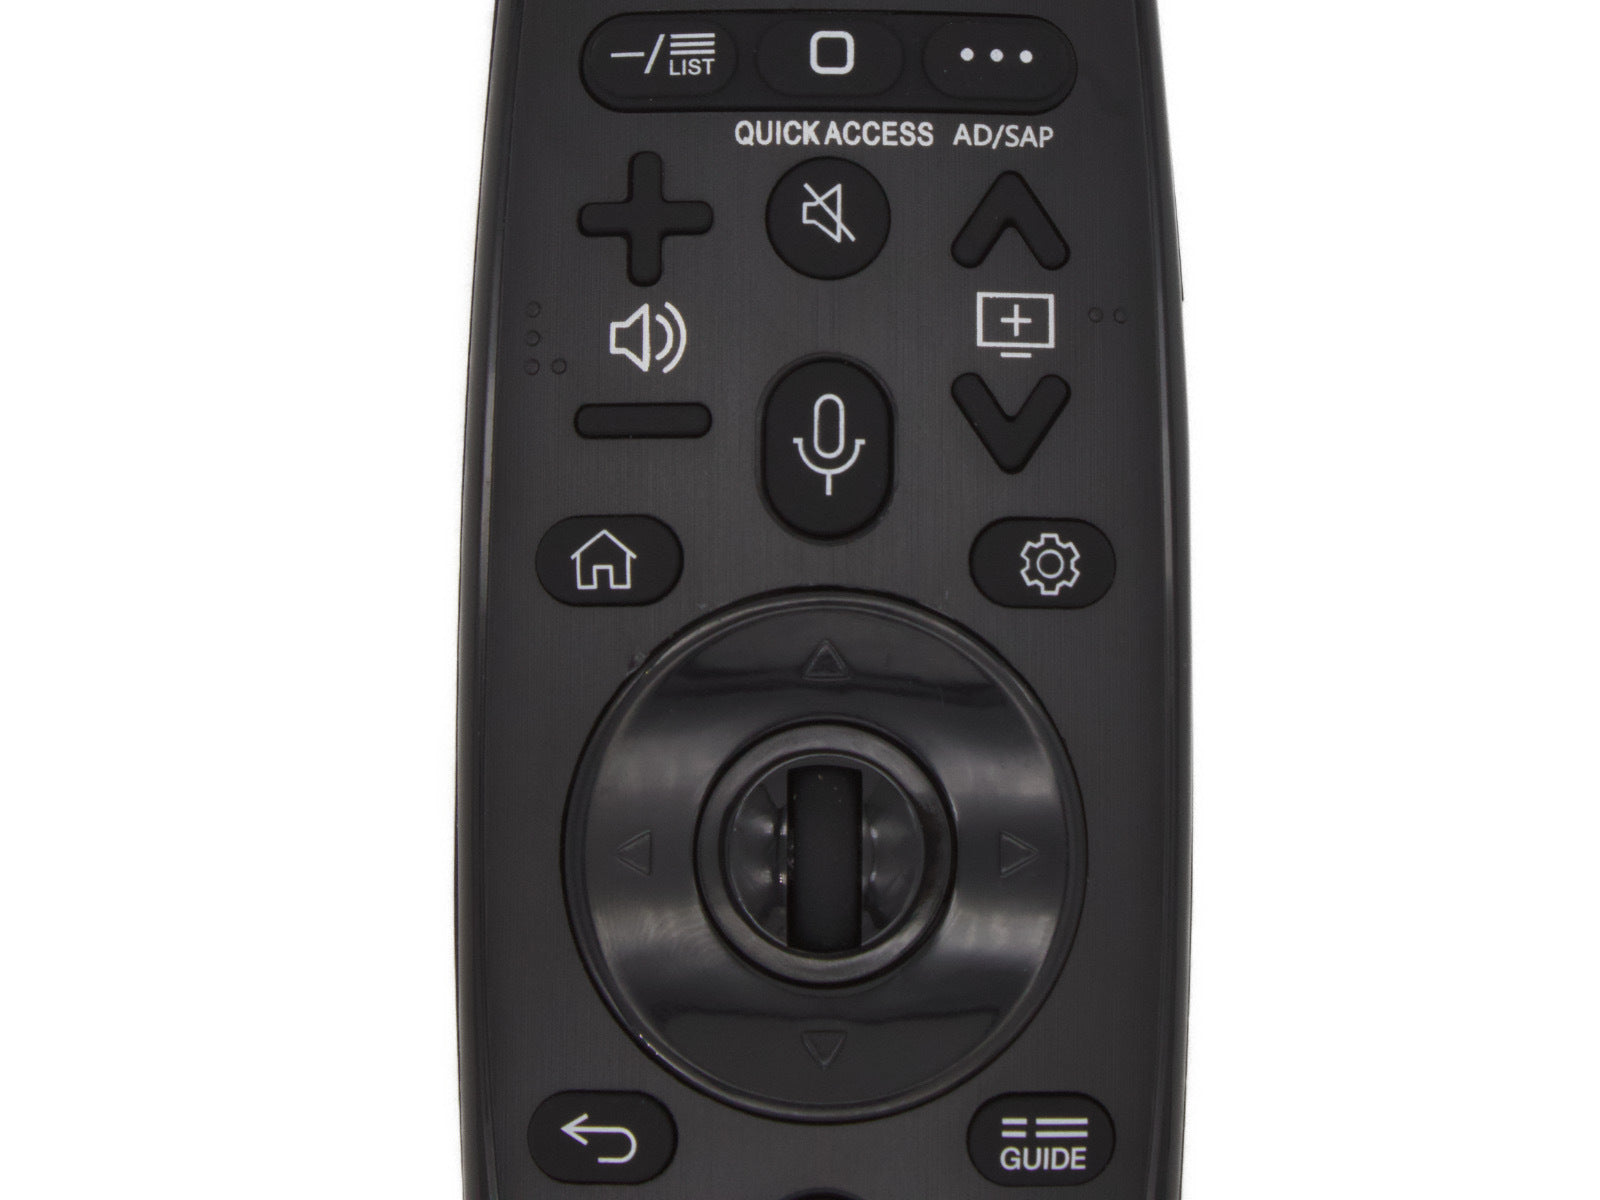 azurano Fernbedienung Magic Remote AN-MR19BA, AKB75635301 für 2019 LG Smart TV mit Sprachsteuerung, Mausfunktion, Direktasten für Netflix, Prime Video & Rakuten-TV (Movies) - Bild 6